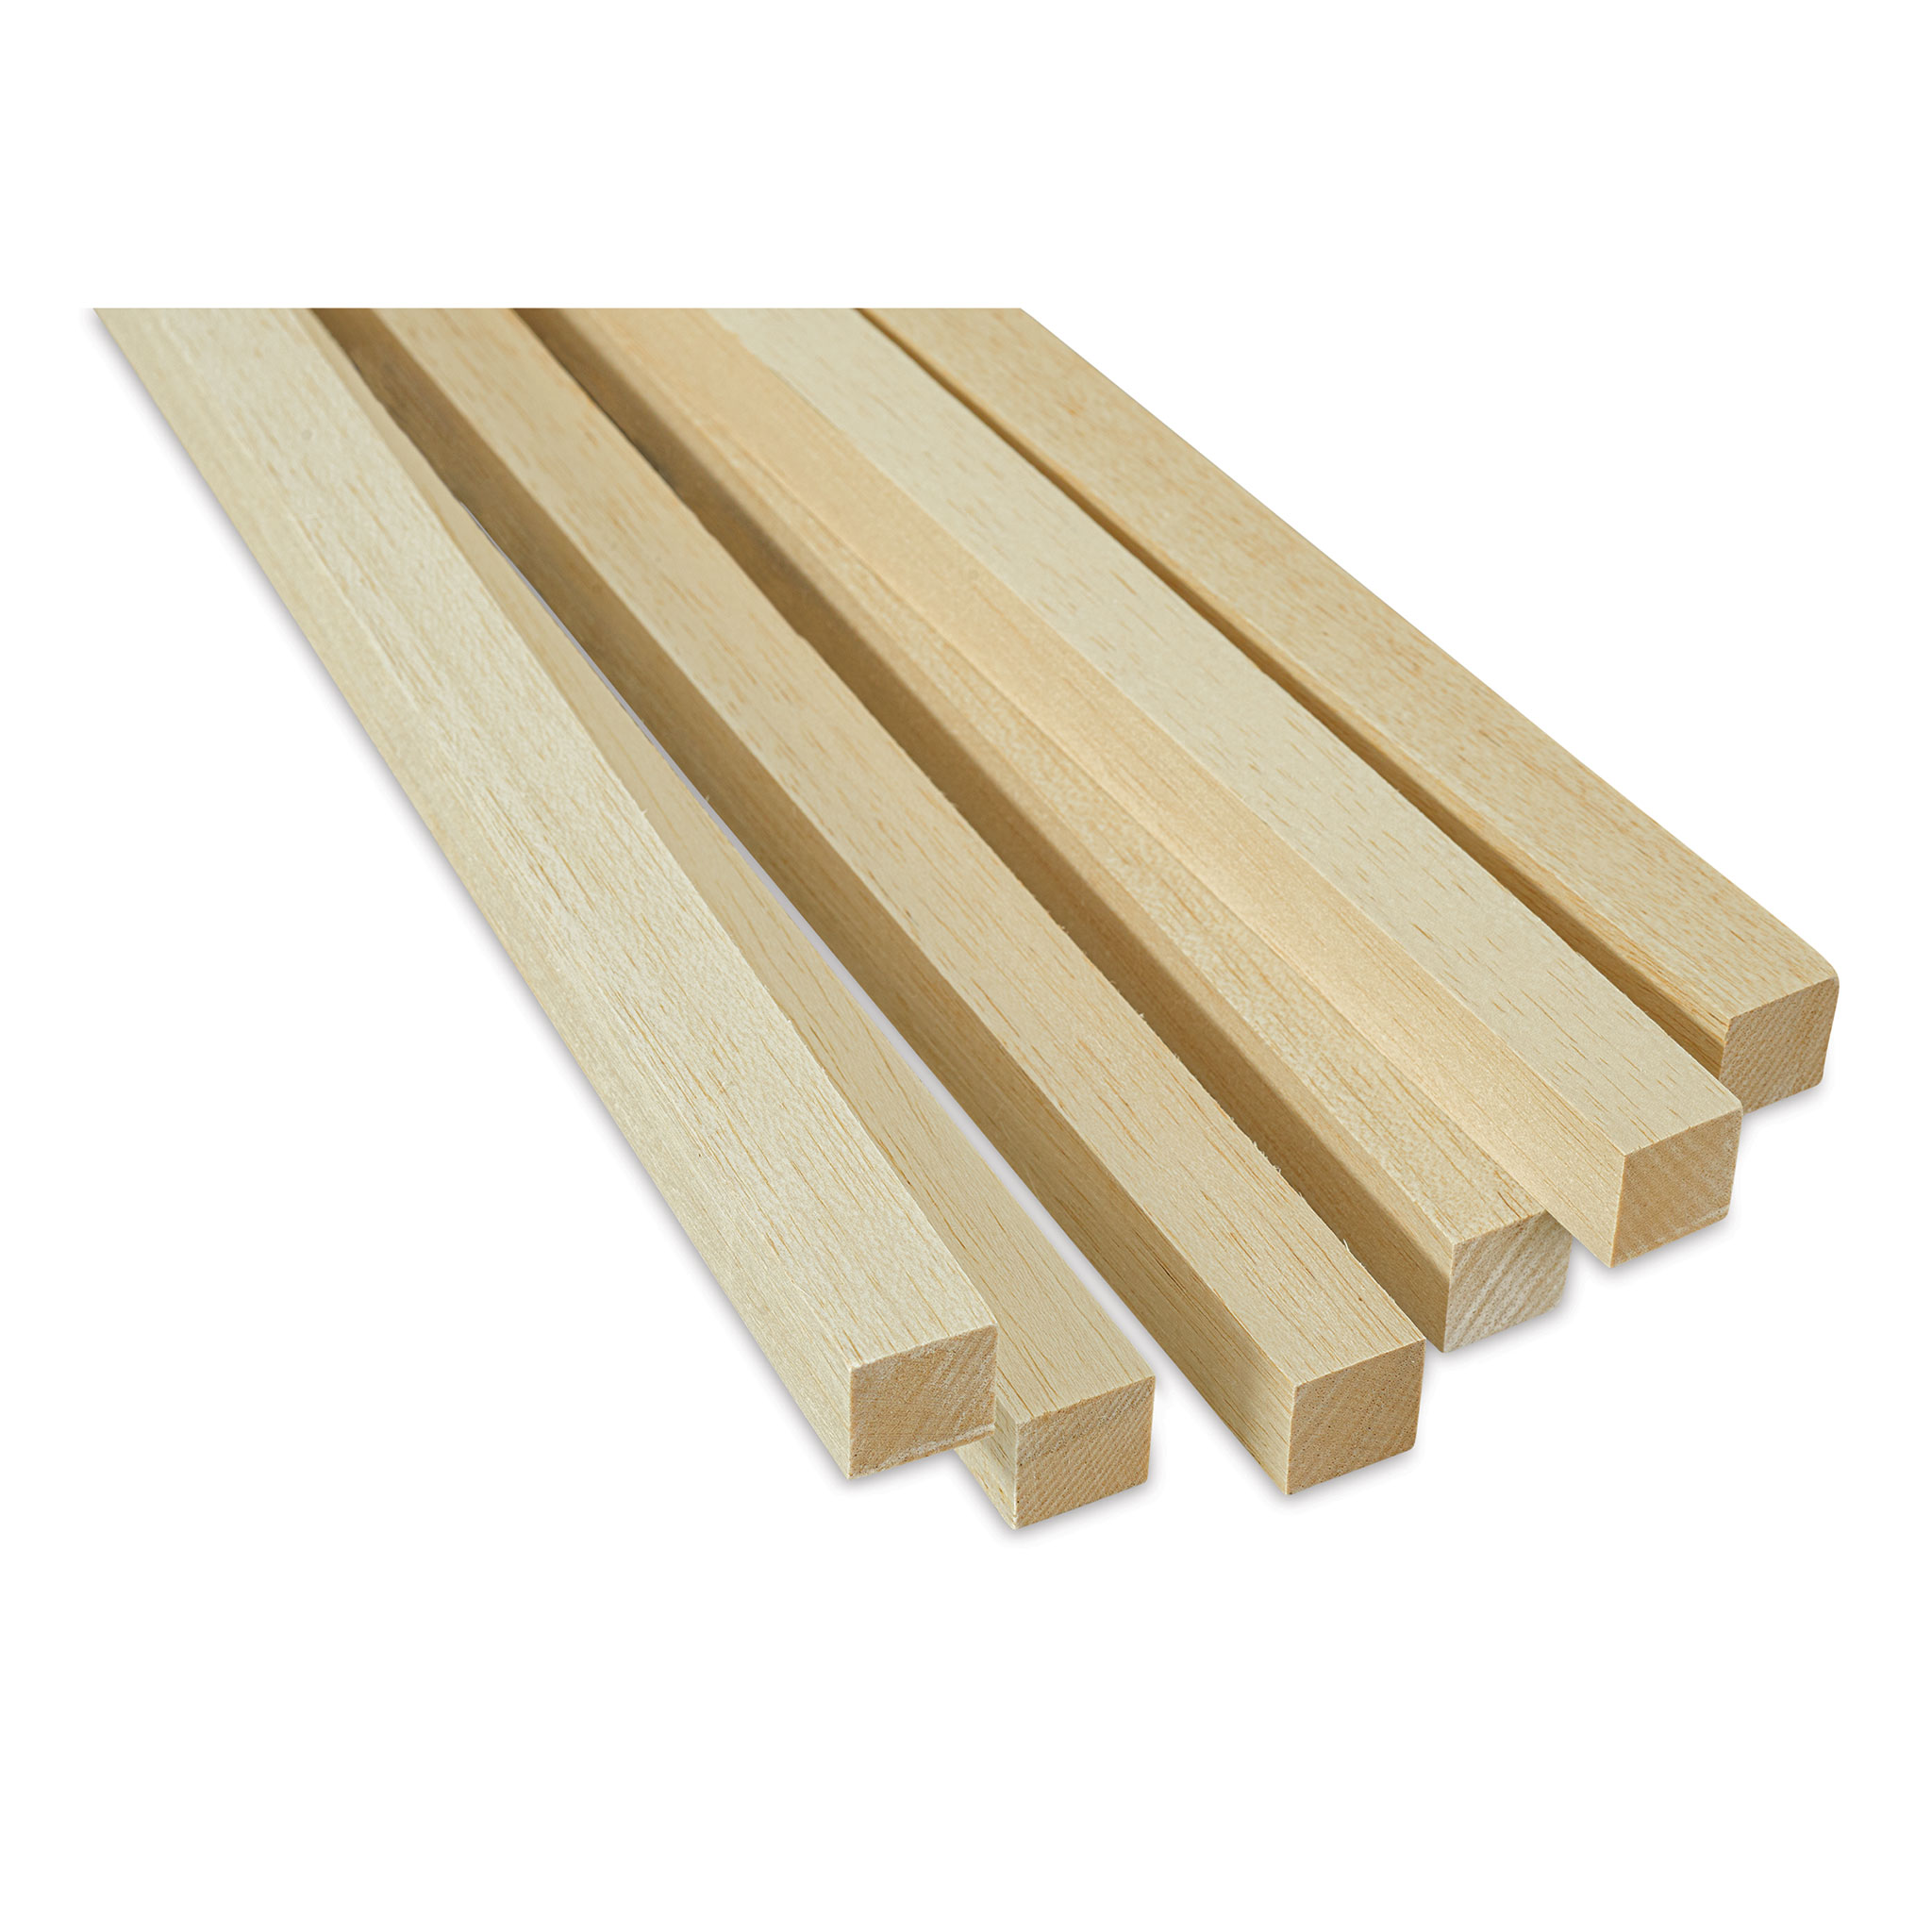 Bud Nosen Balsa Wood Sticks - 1/16 x 1/4 x 36, Pkg of 30